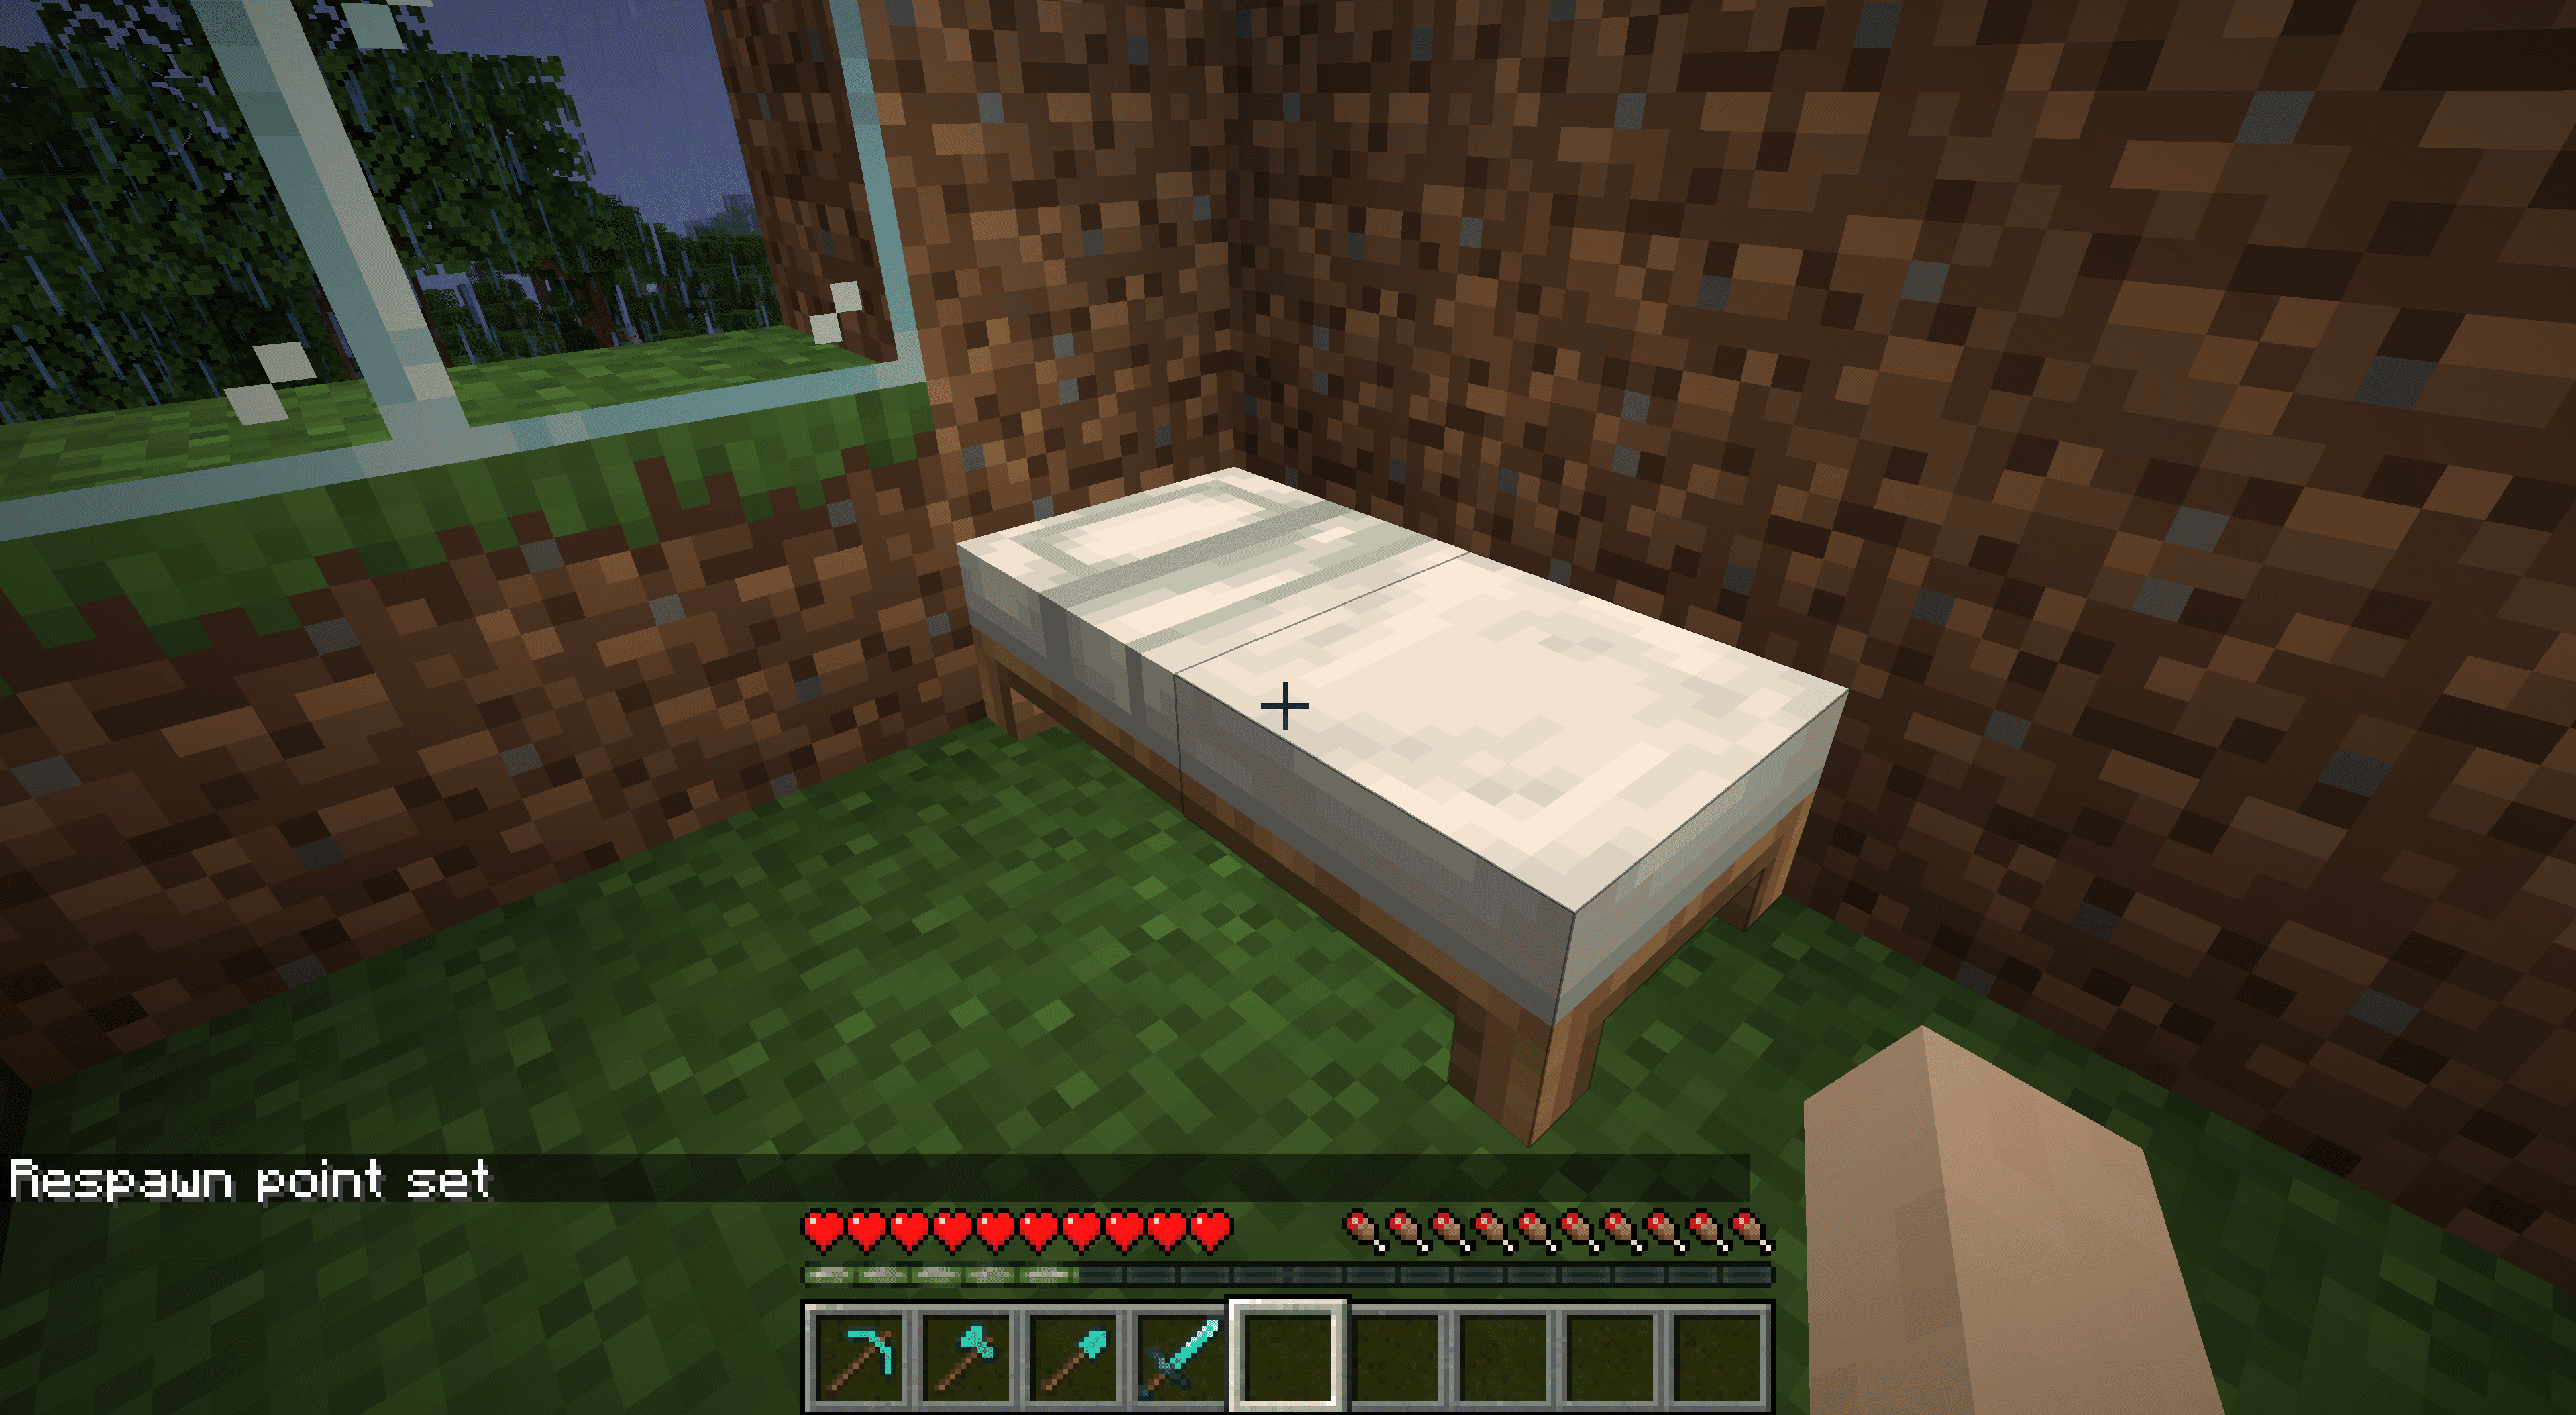 Uma cama no Minecraft.